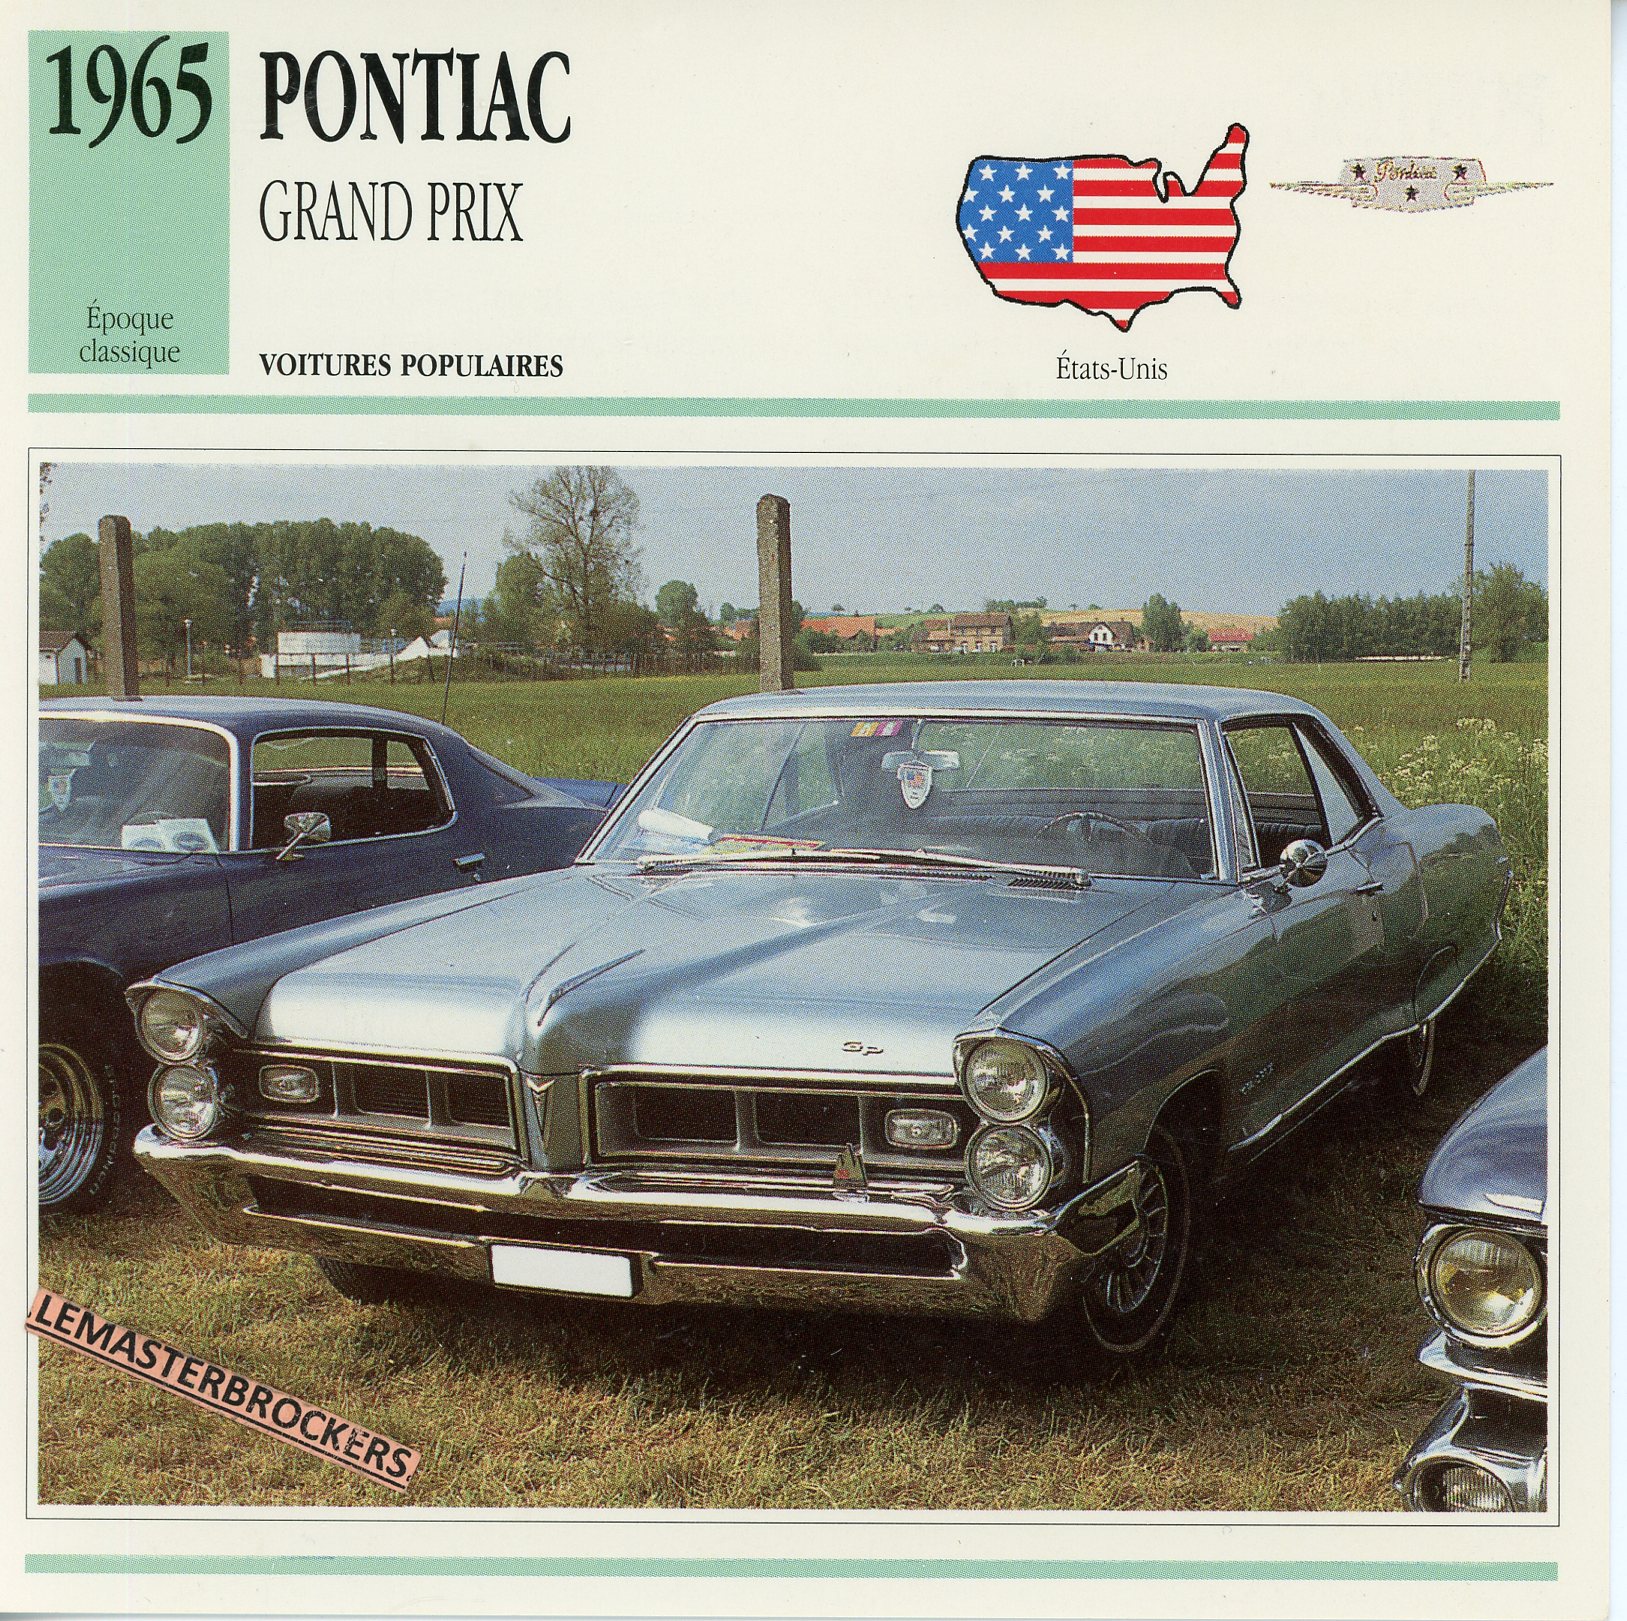 PONTIAC GRAND PRIX 1965 - FICHE AUTO ATLAS ÉDITION